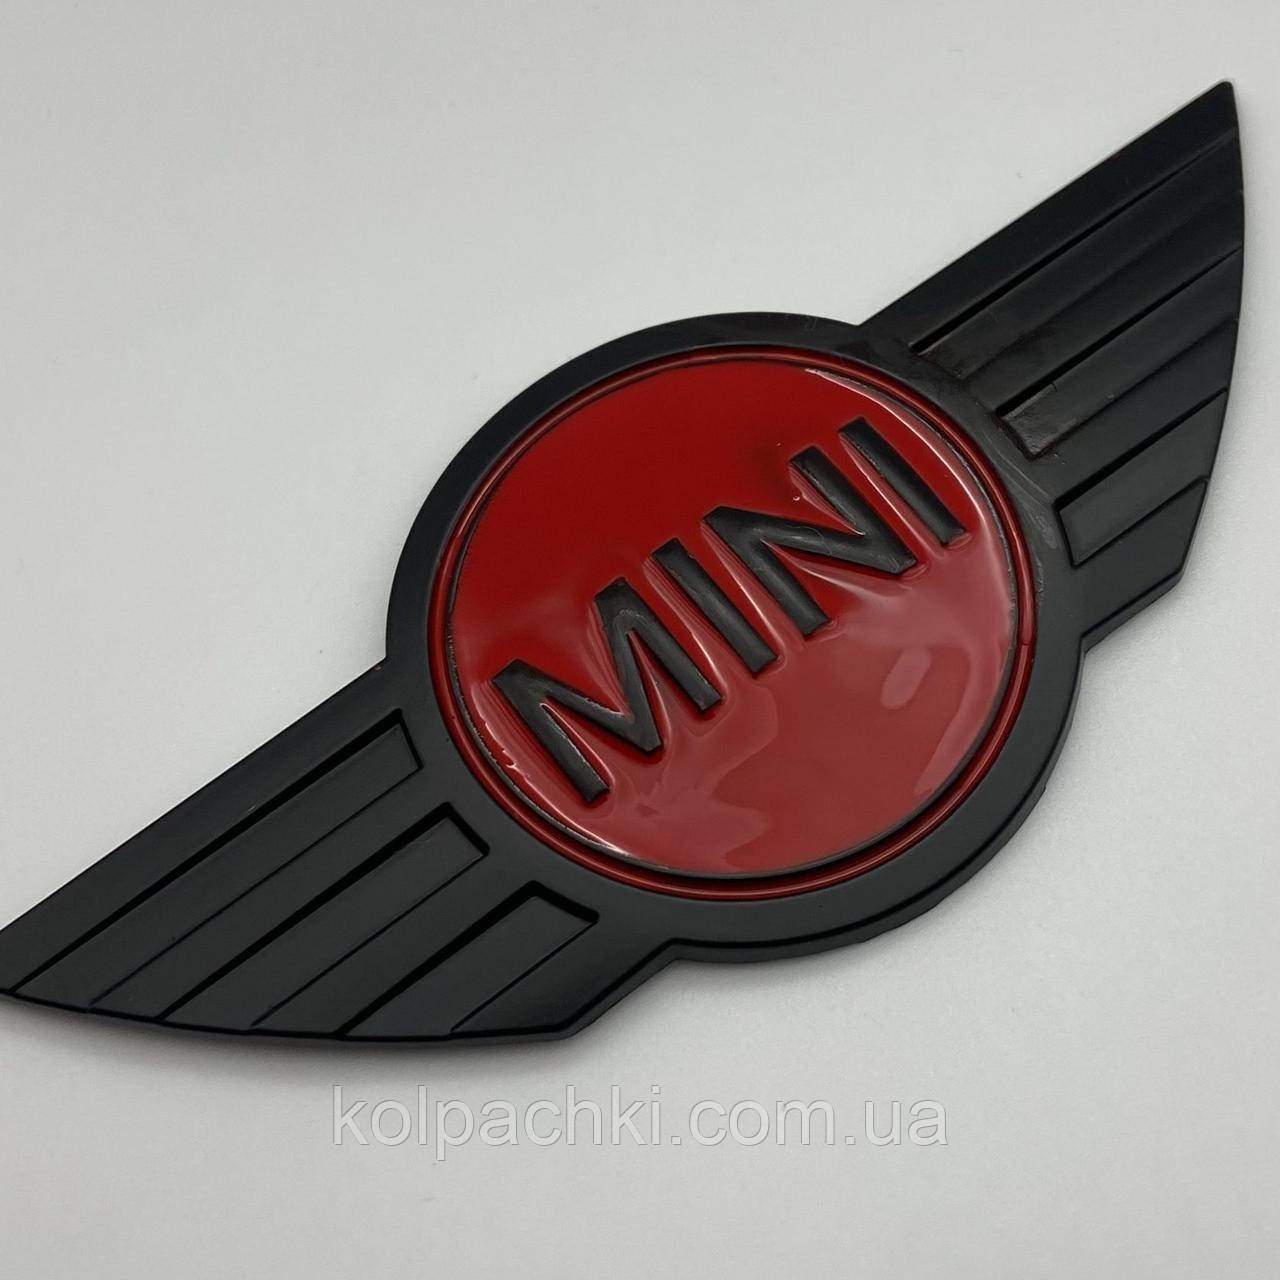 Емблема MINI (Міні) 115 mm (значок, наклейка, логотип на капот багажник) чорно-червоний метал